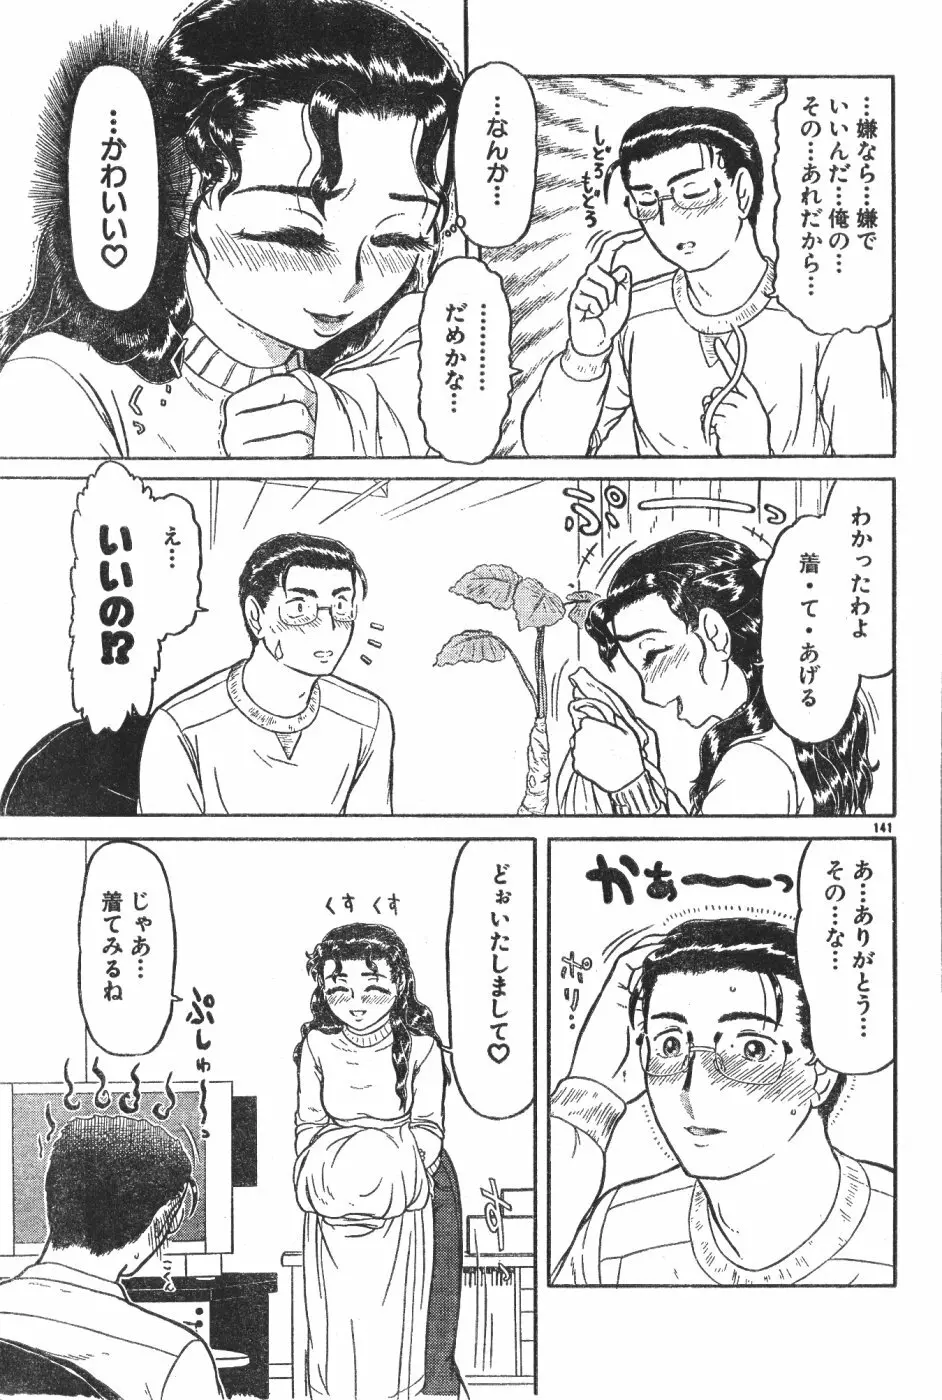 Men’s Dolphin Vol 12 2000-08-01 141ページ